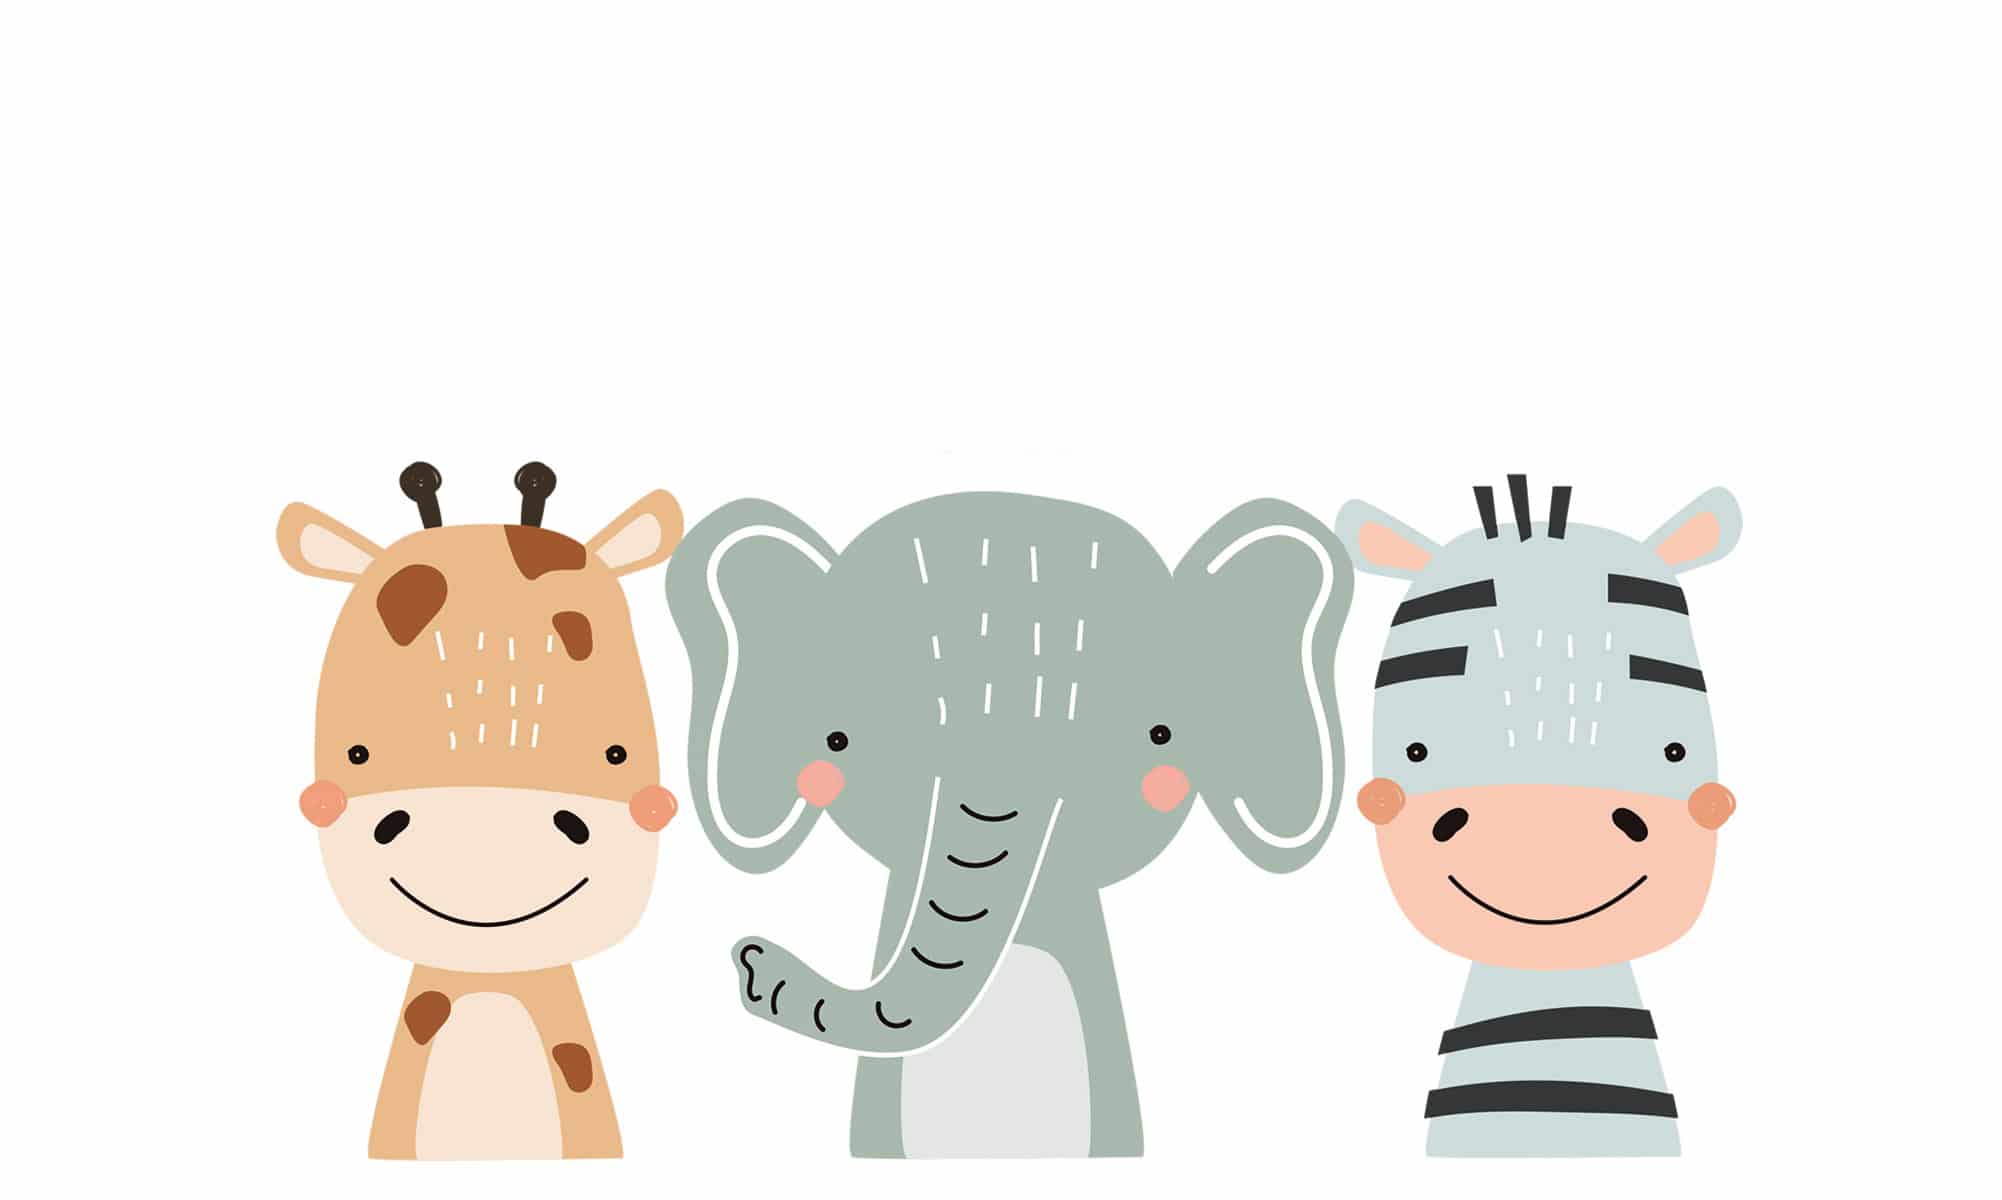 Gemalte Giraffe, Elefant und Zebra nebeneinander